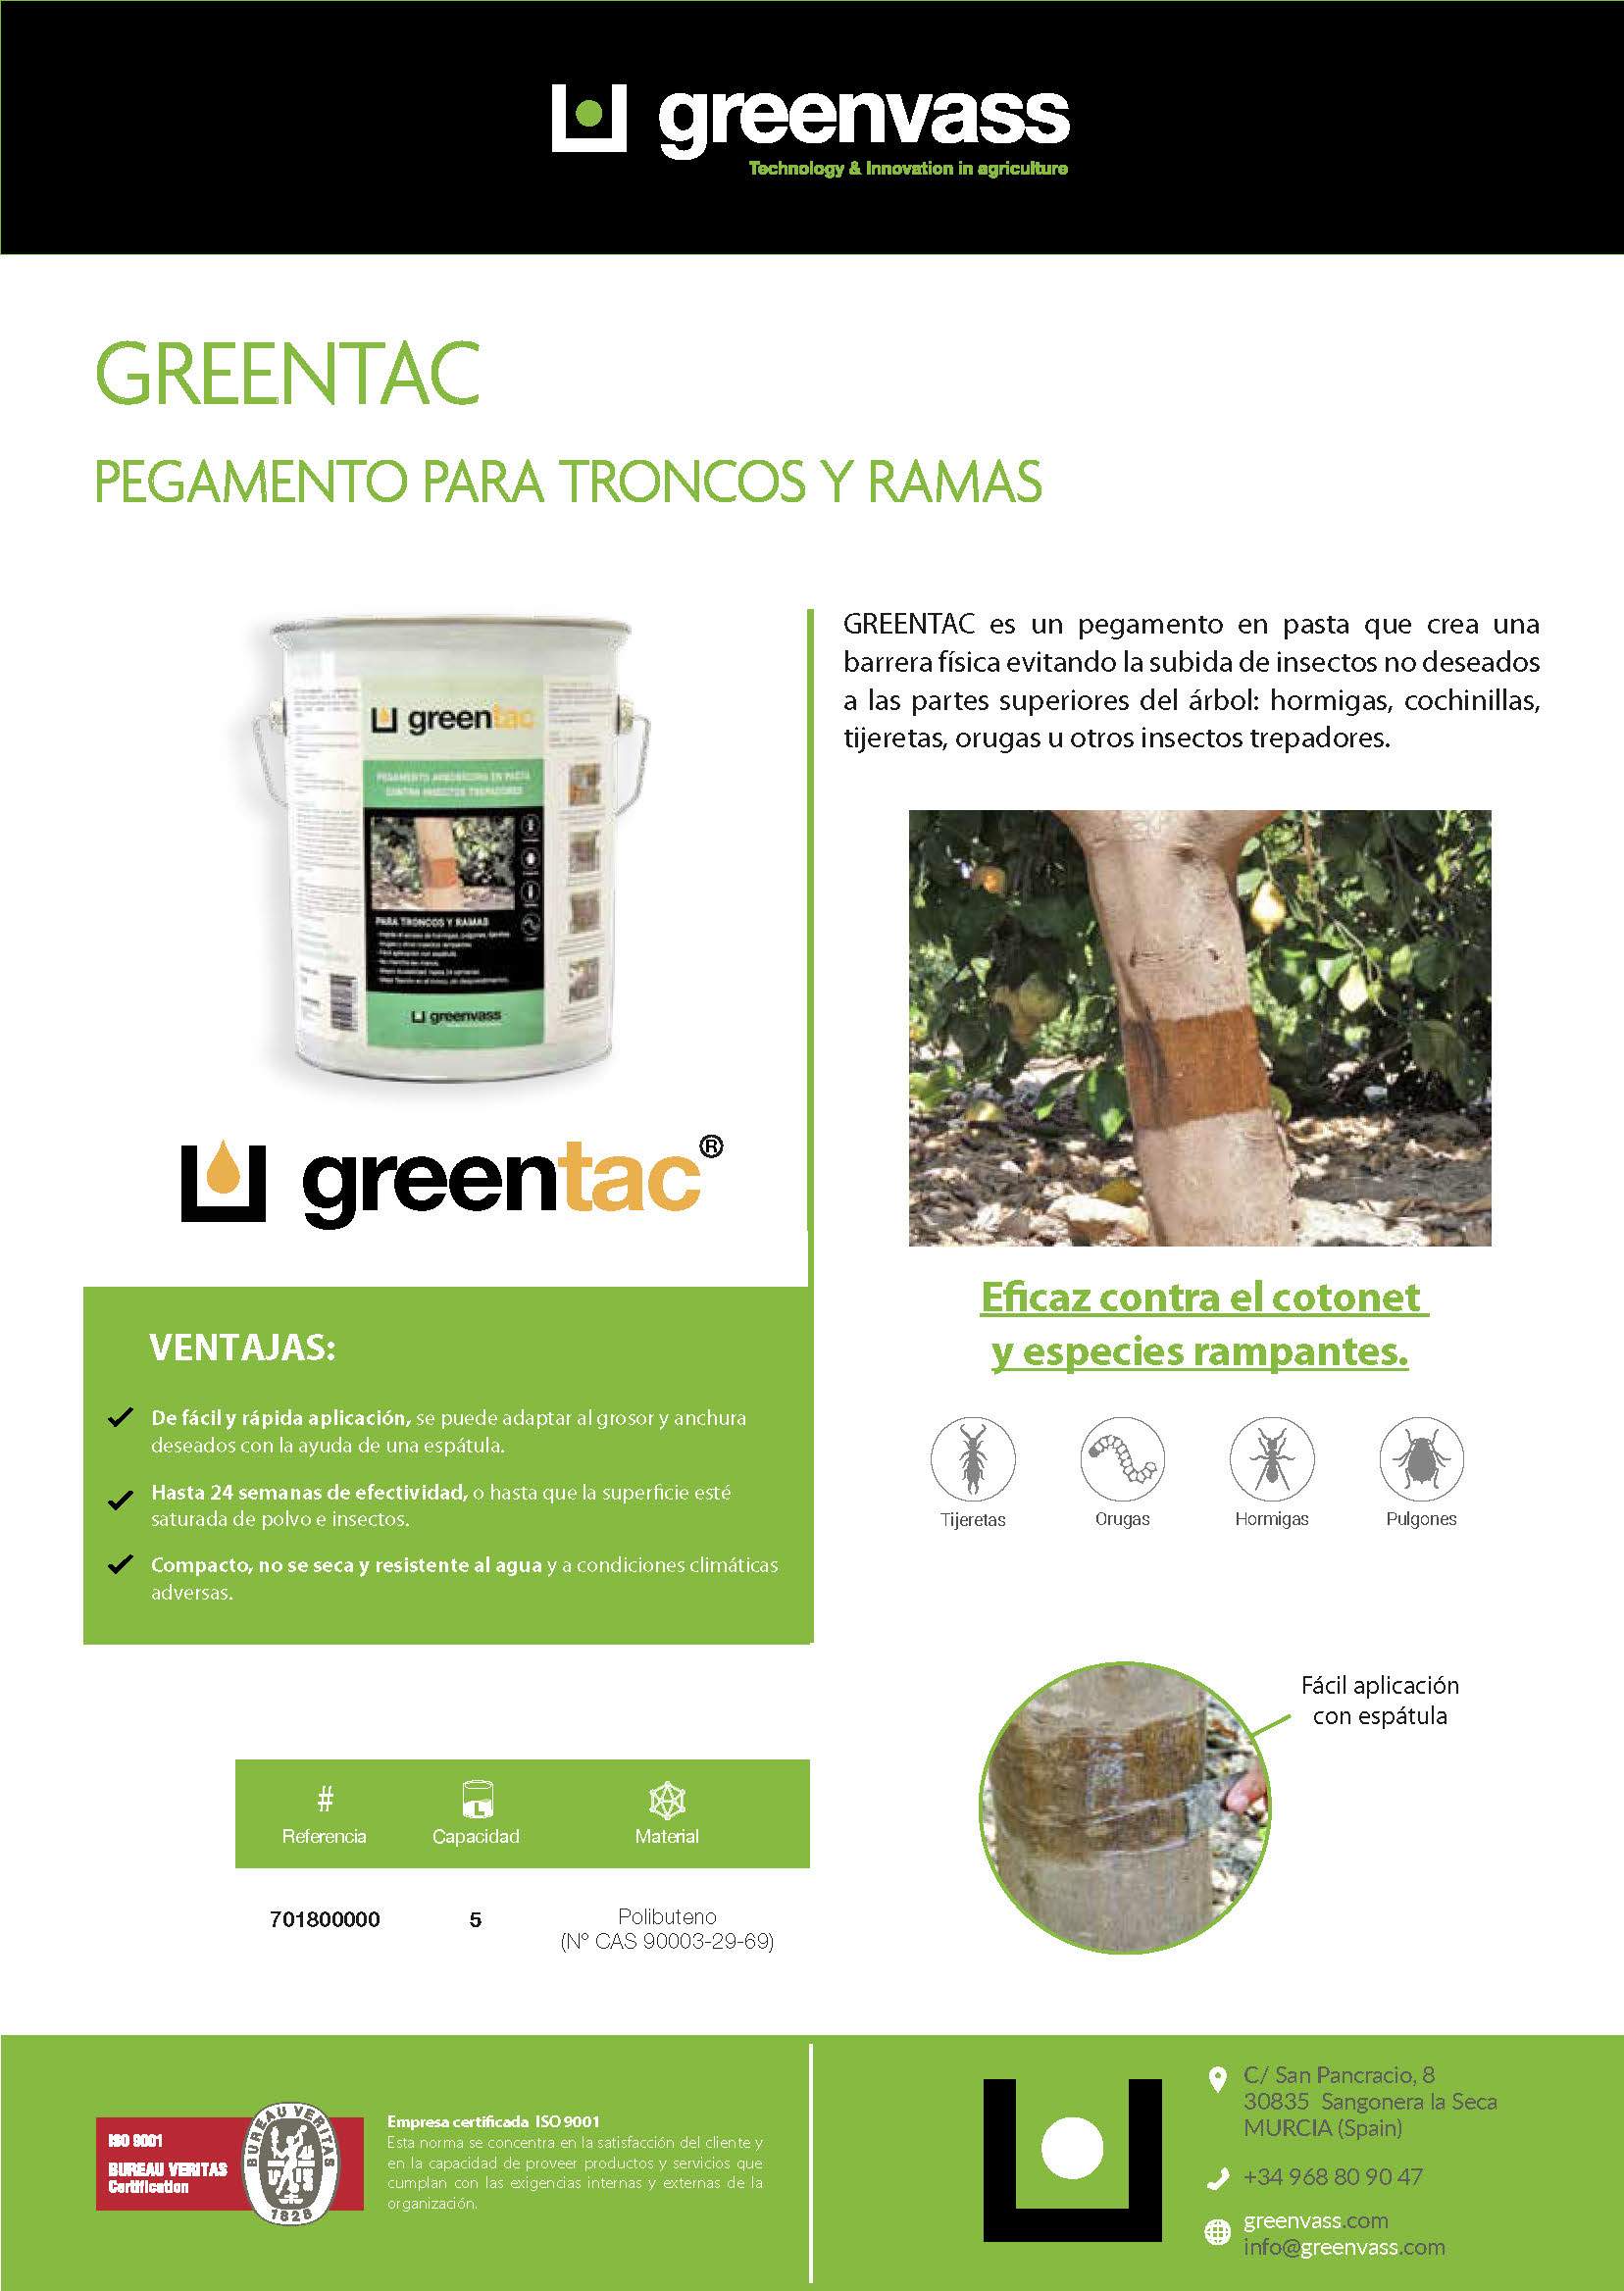 Greentac